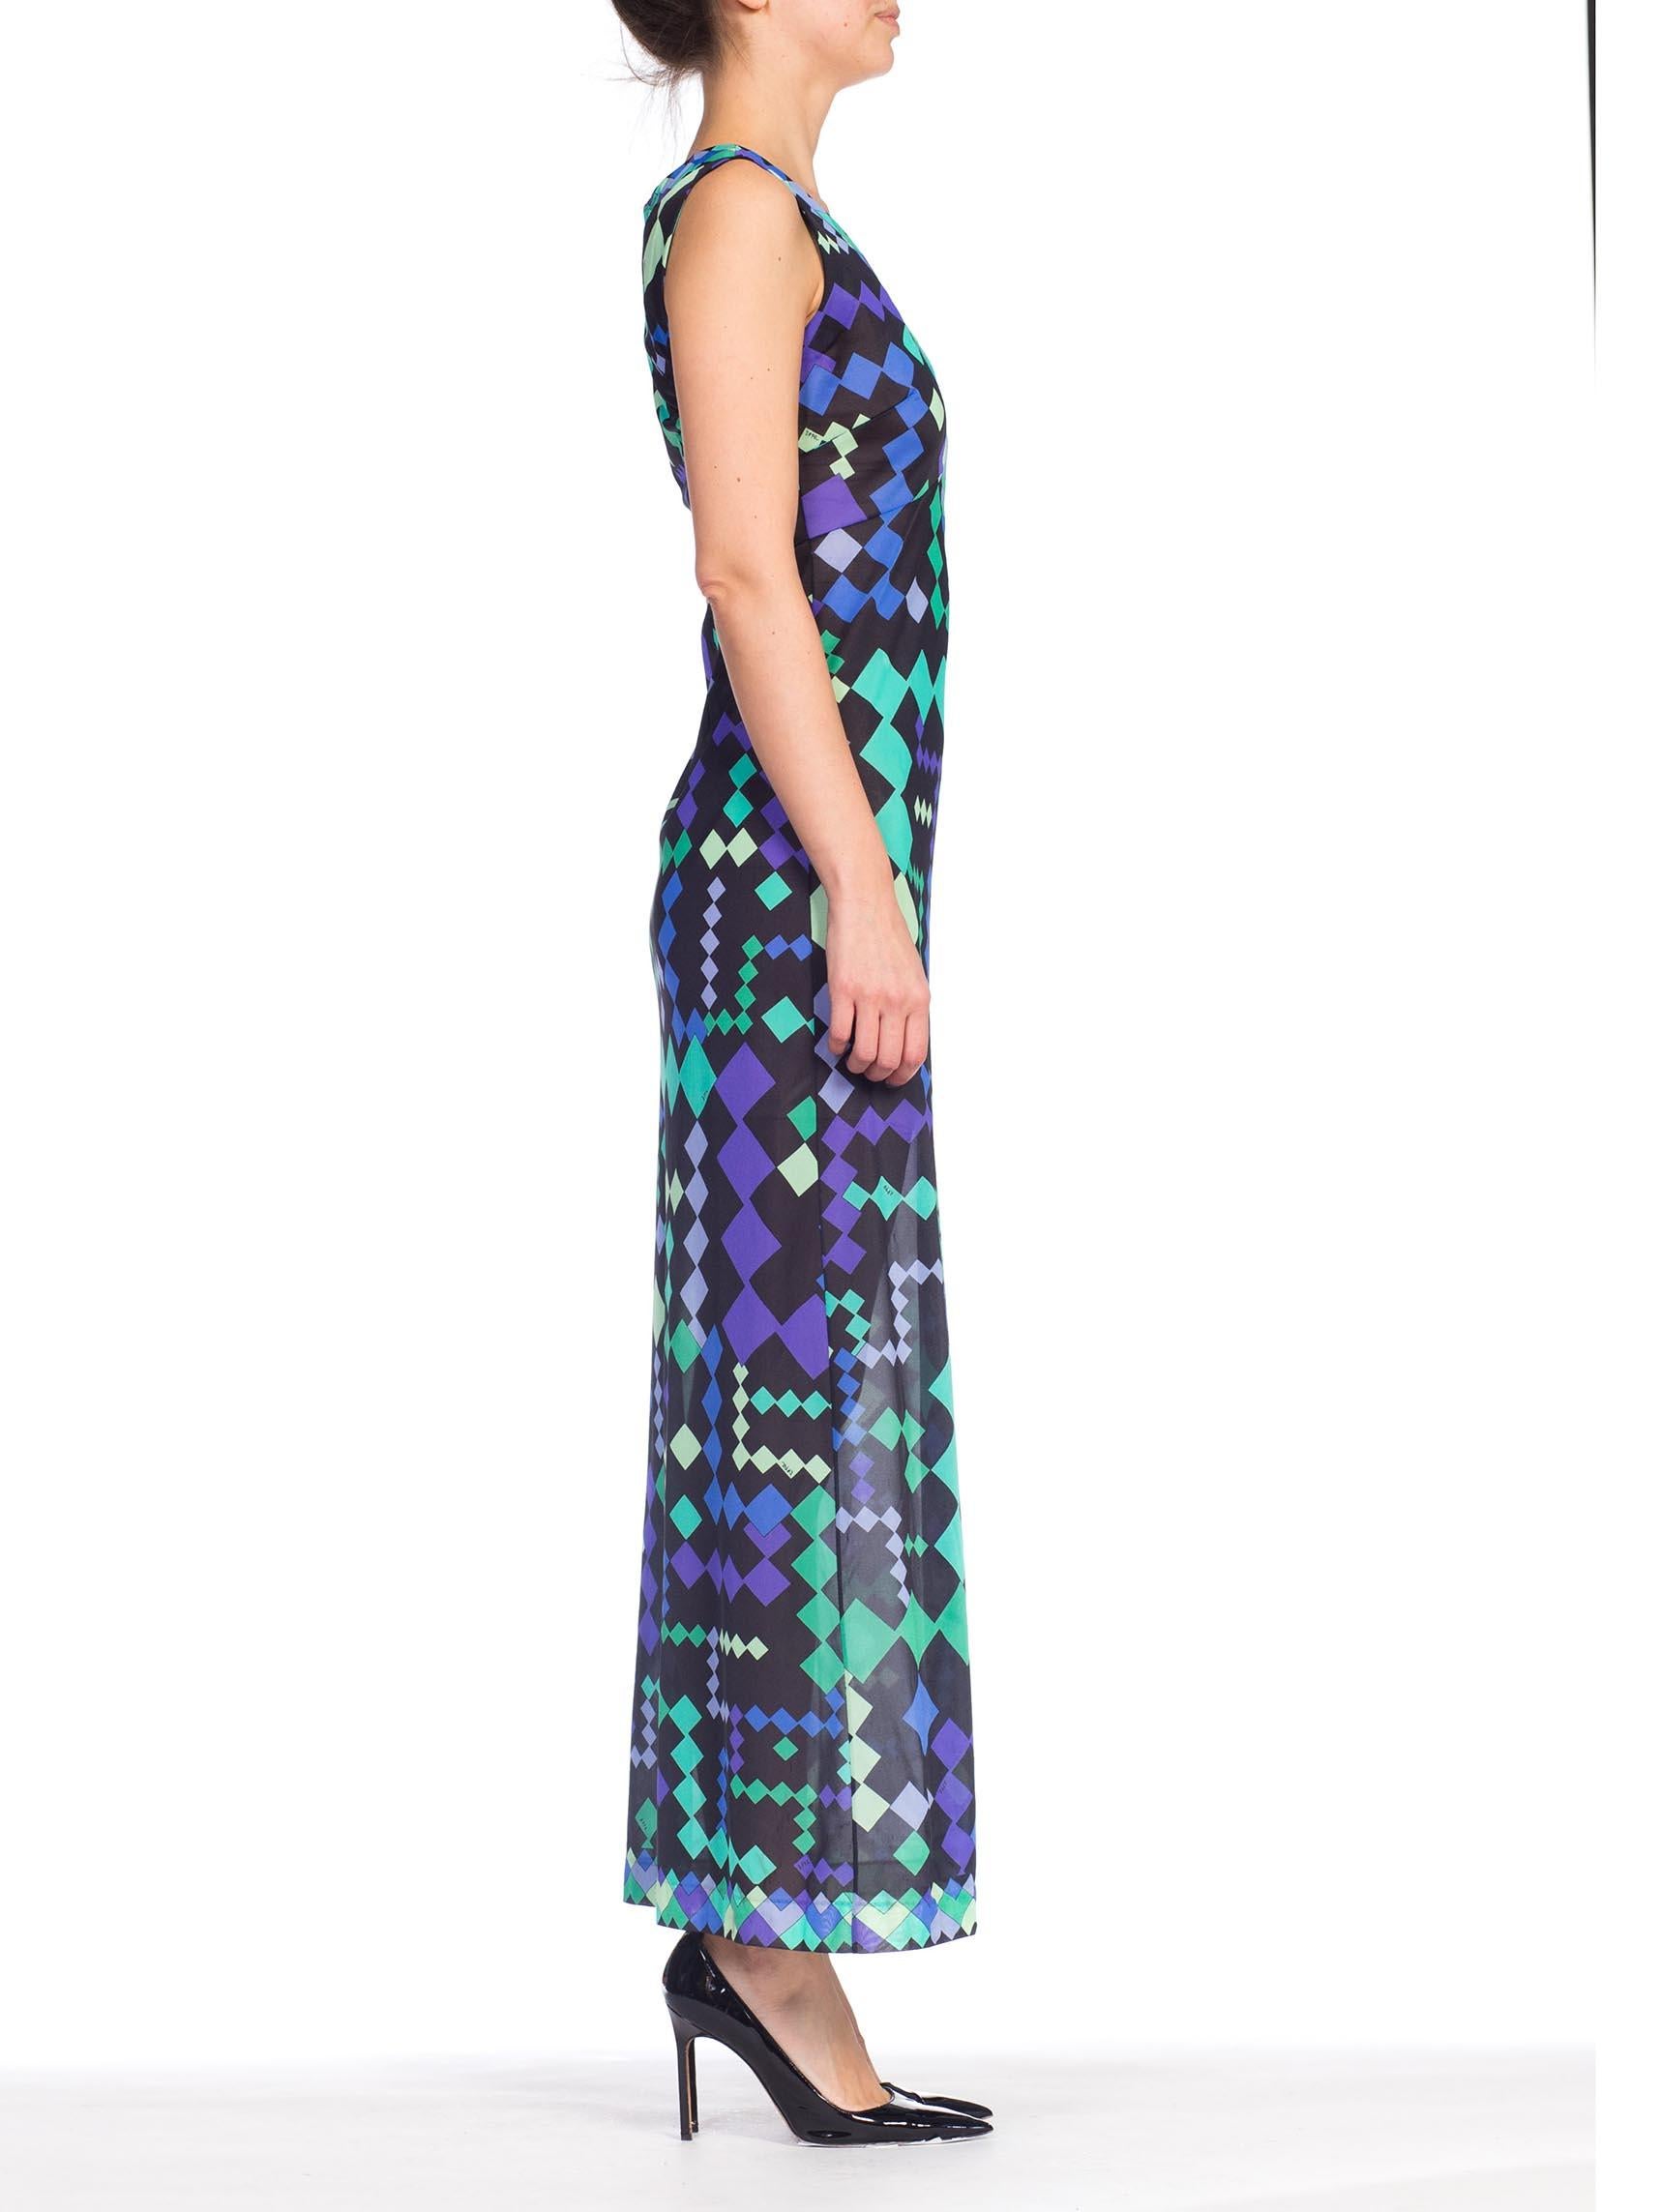 Women's 1970S PUCCI Purple & Blue Slinky Nylon Jersey Negligee Slip Dress